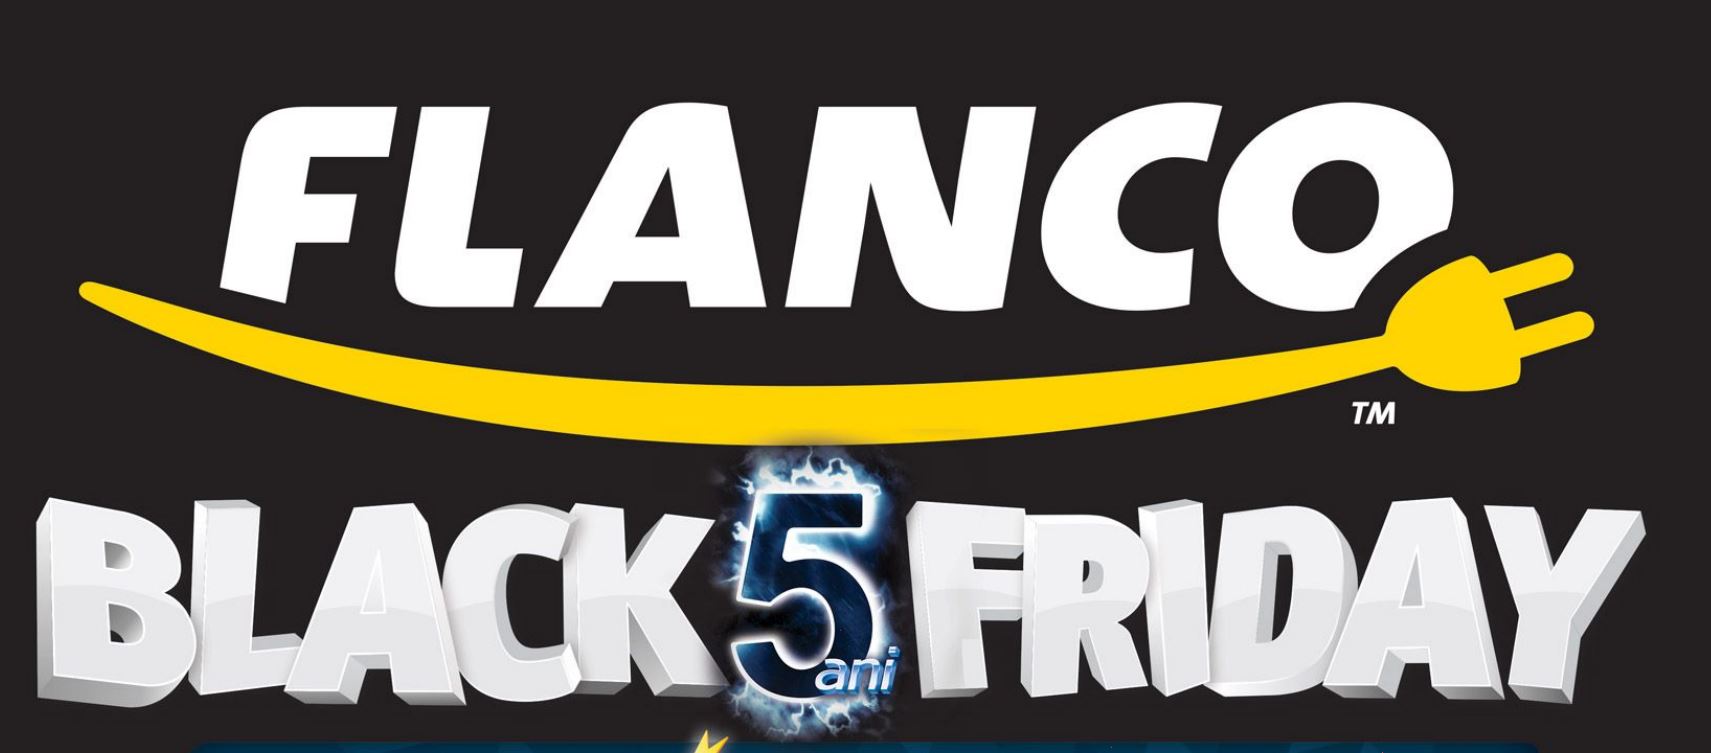 Flanco Black Friday 2015 Rabattkatalog